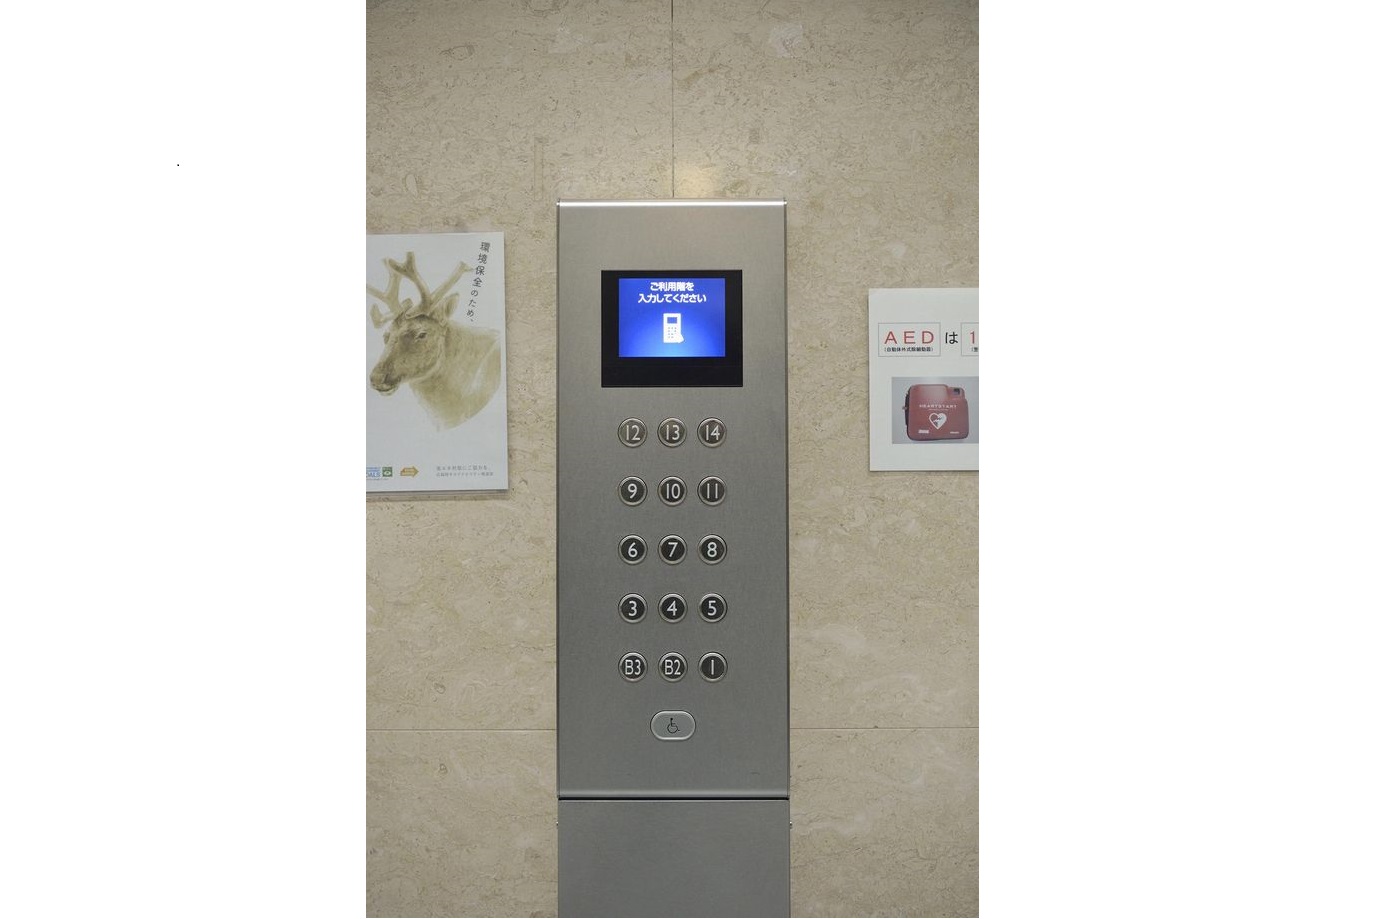 利用者はエレベーターホールに設置された乗場操作盤で行先階を登録し、表示された号機に乗る